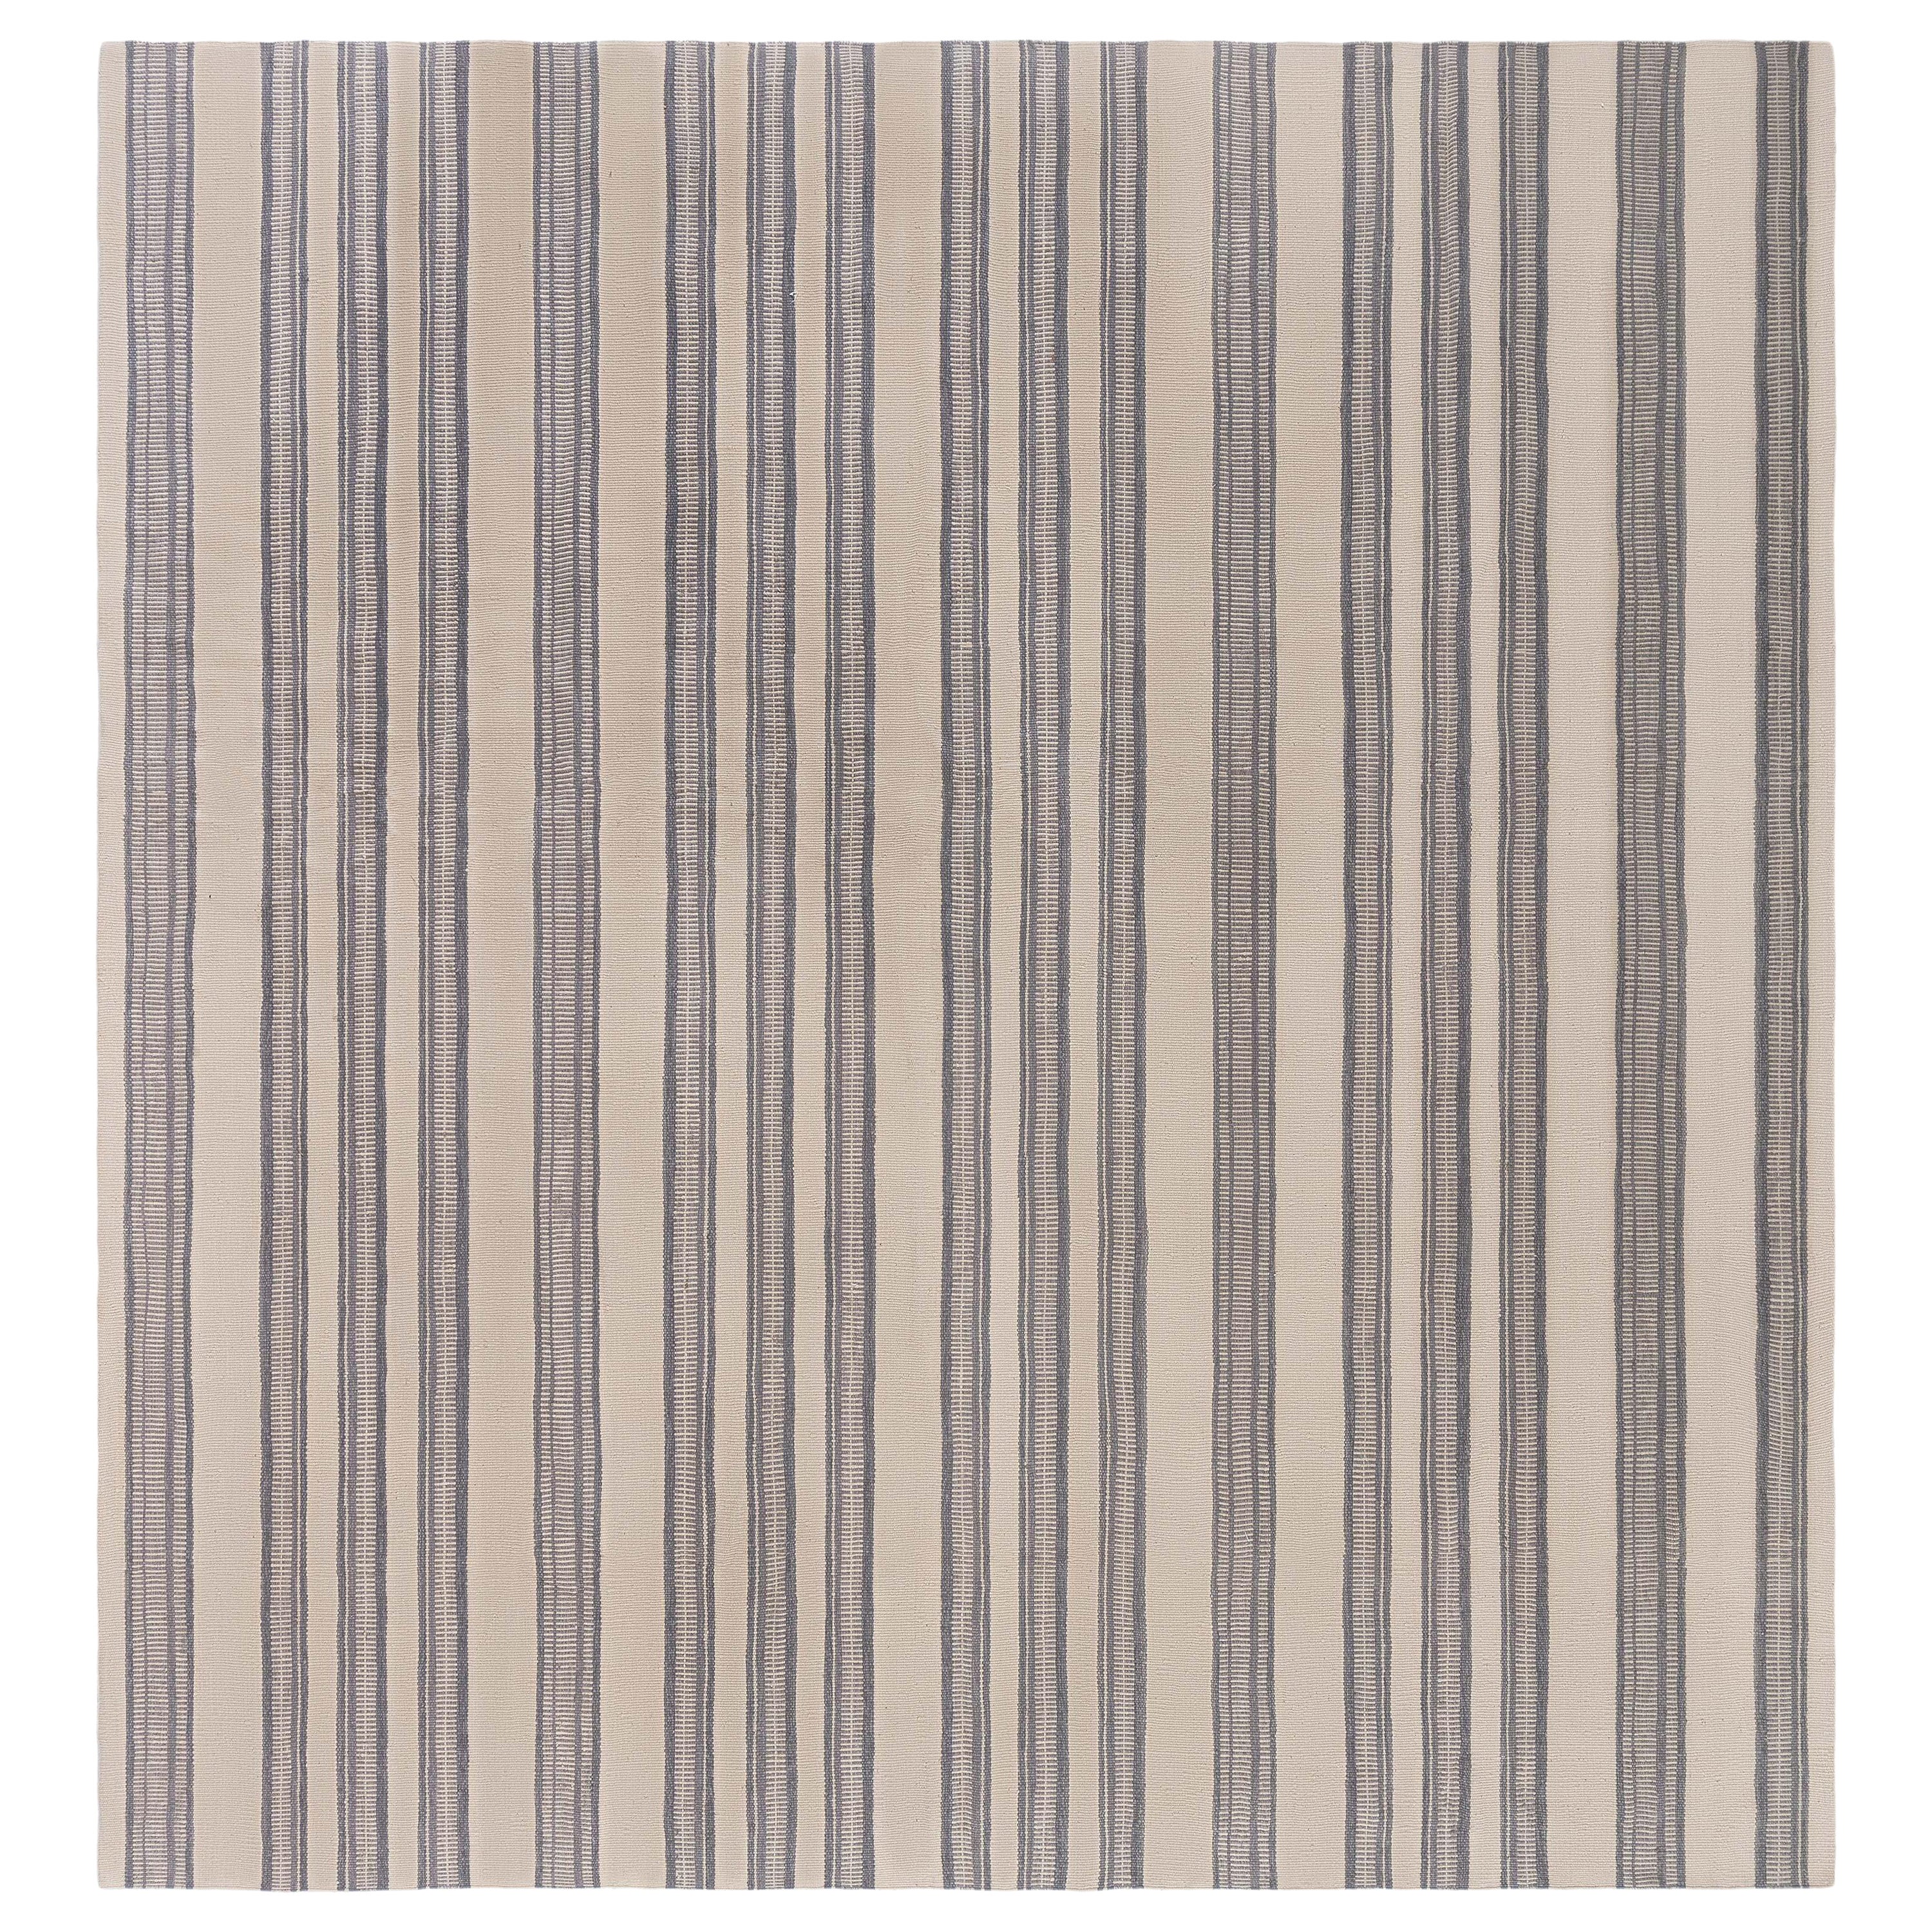 Tapis Contemporary Striped Flat Weave de Doris Leslie Blau